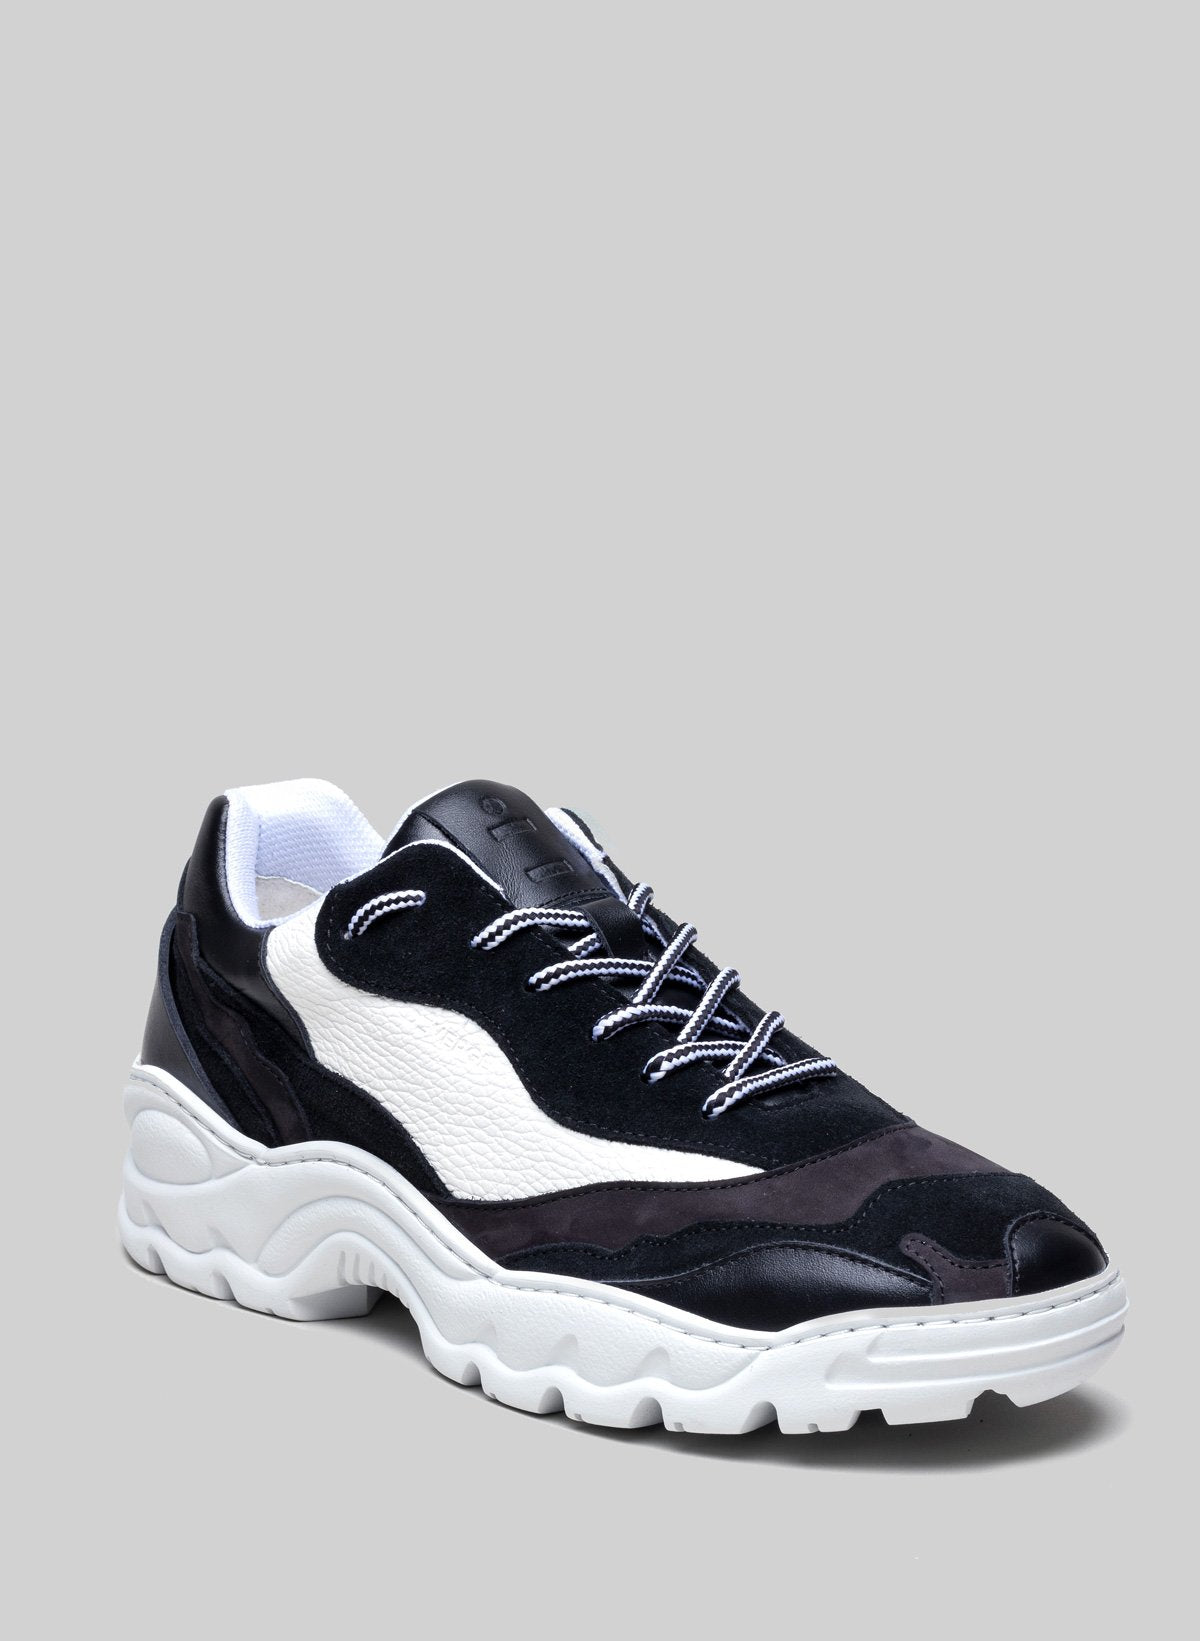 Schwarzer und weißer Sneaker von Diverge, der soziale Auswirkungen und individuelle Schuhe fördert.